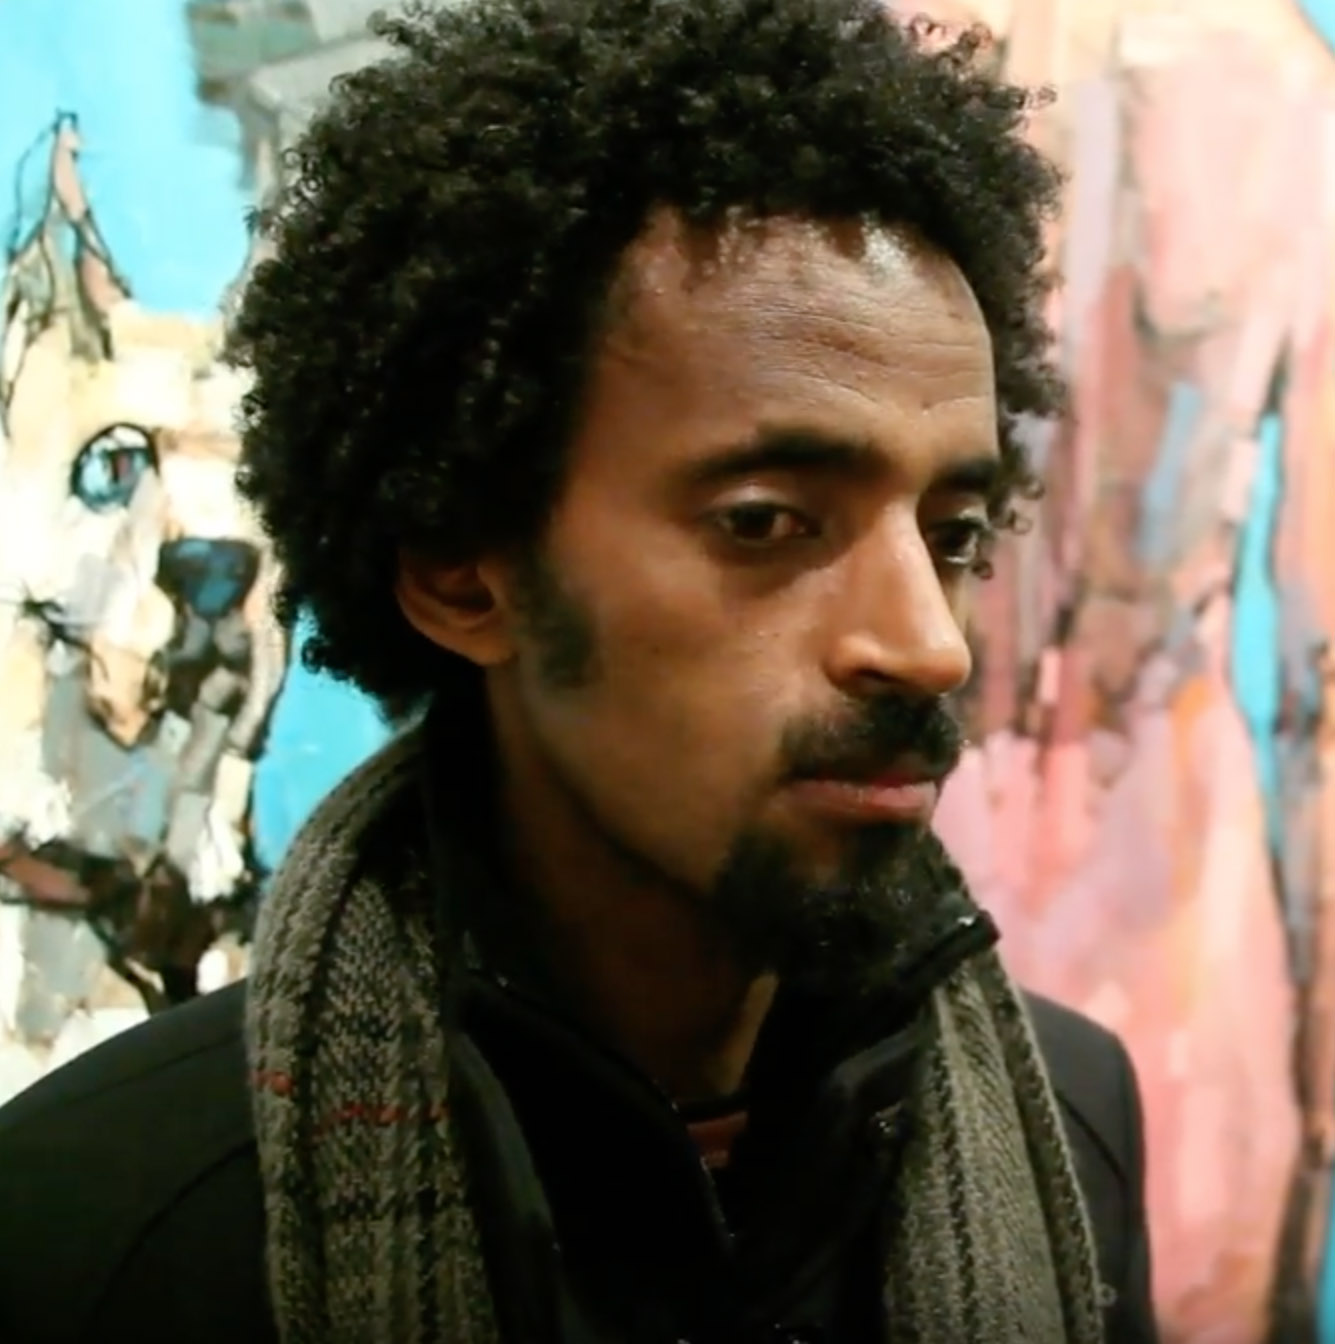 Dawit in London